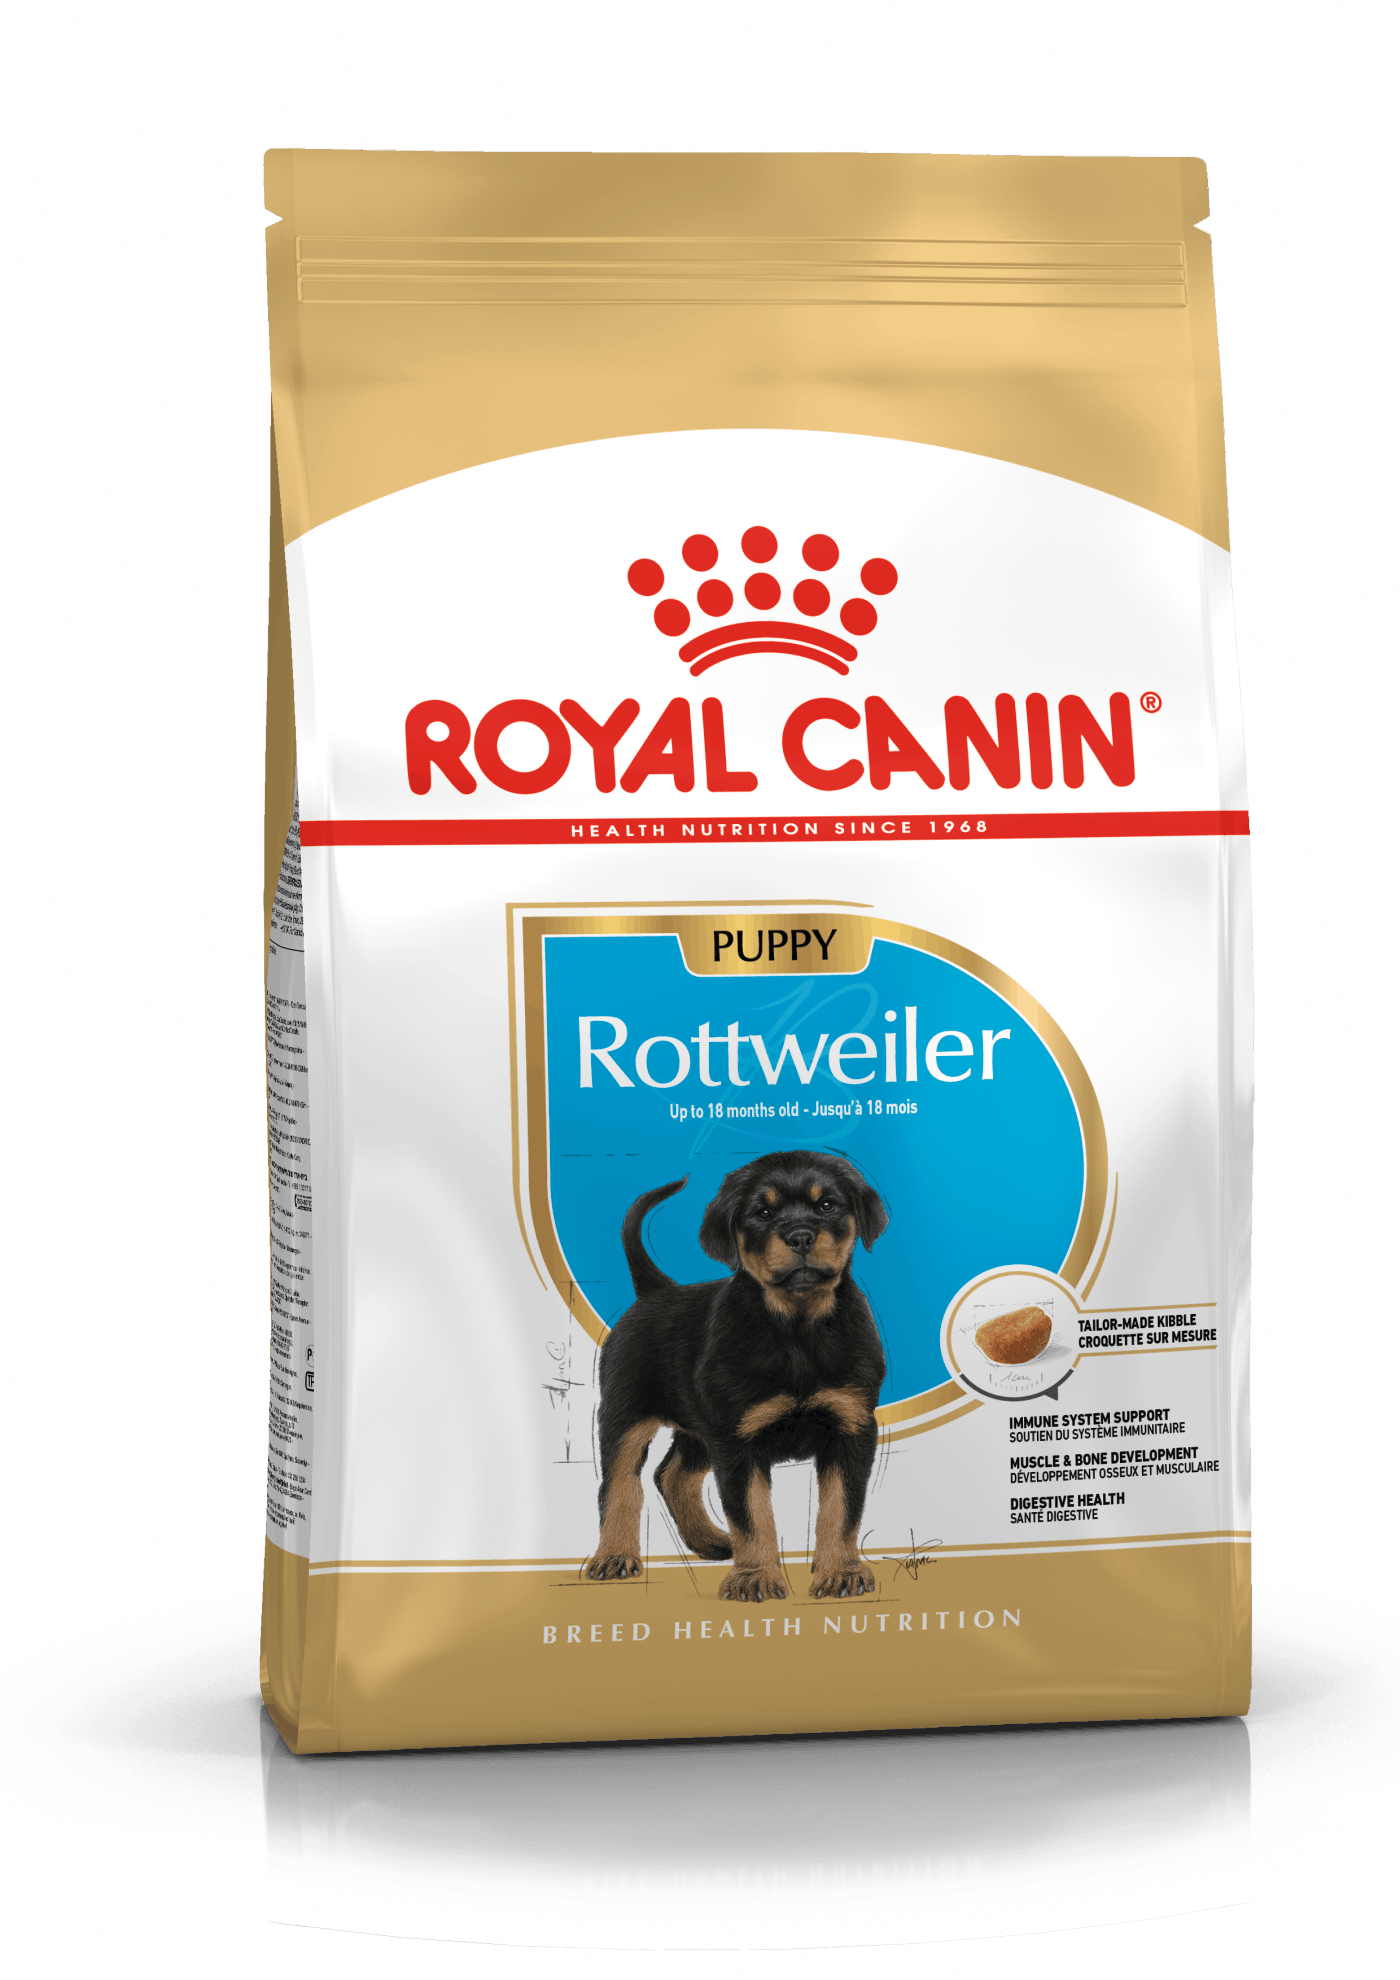 Billede af Royal Canin Rottweiler Puppy - op til 18 måneder (12kg)